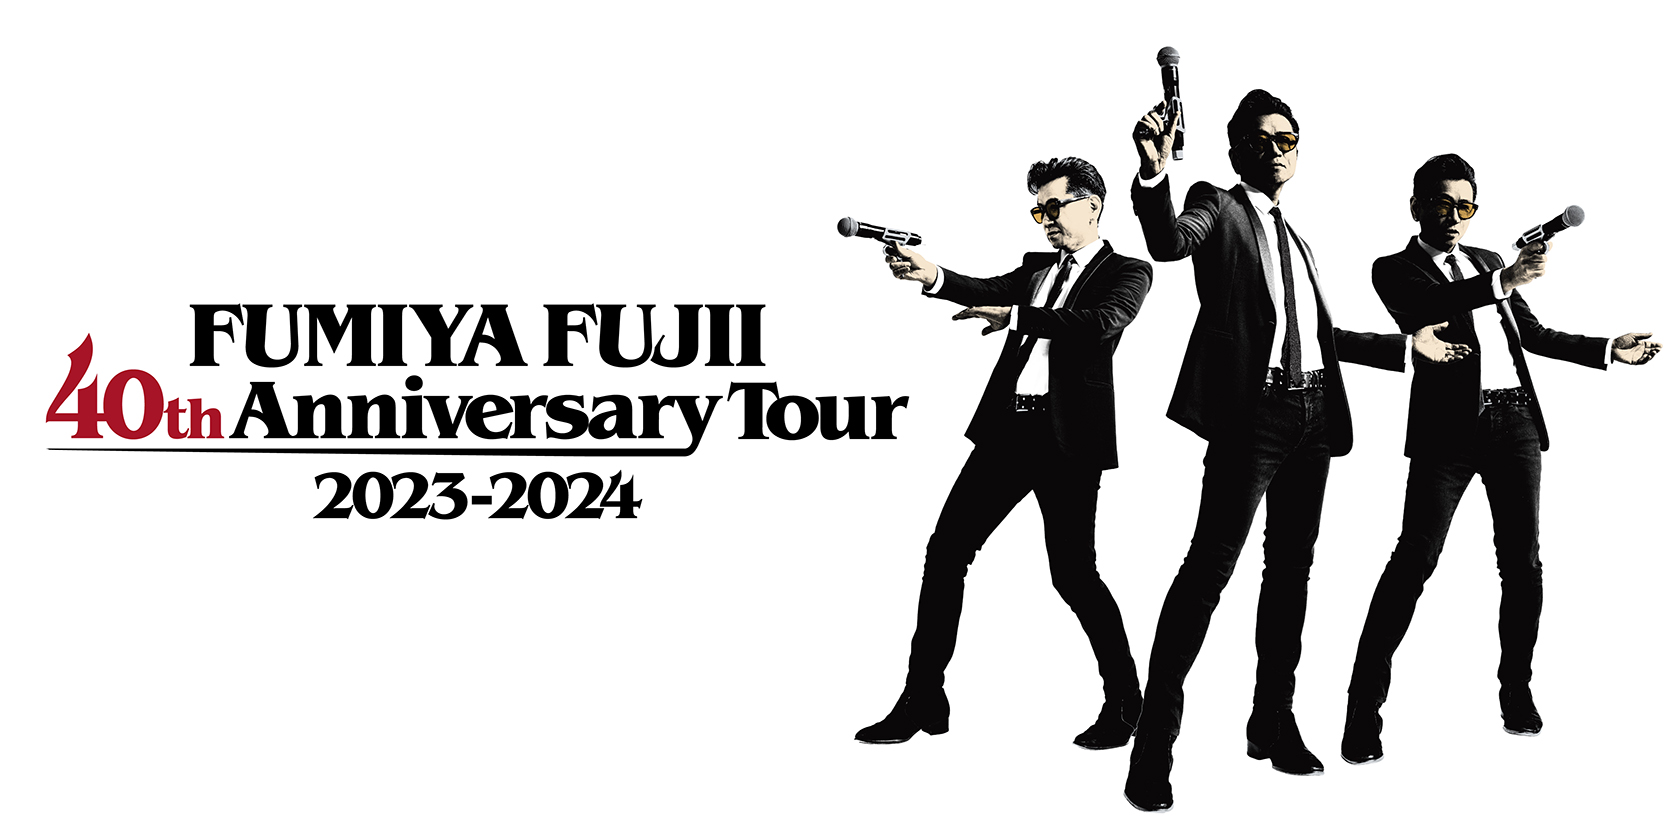 藤井フミヤ 40th Anniversary Tour 2023〜2024